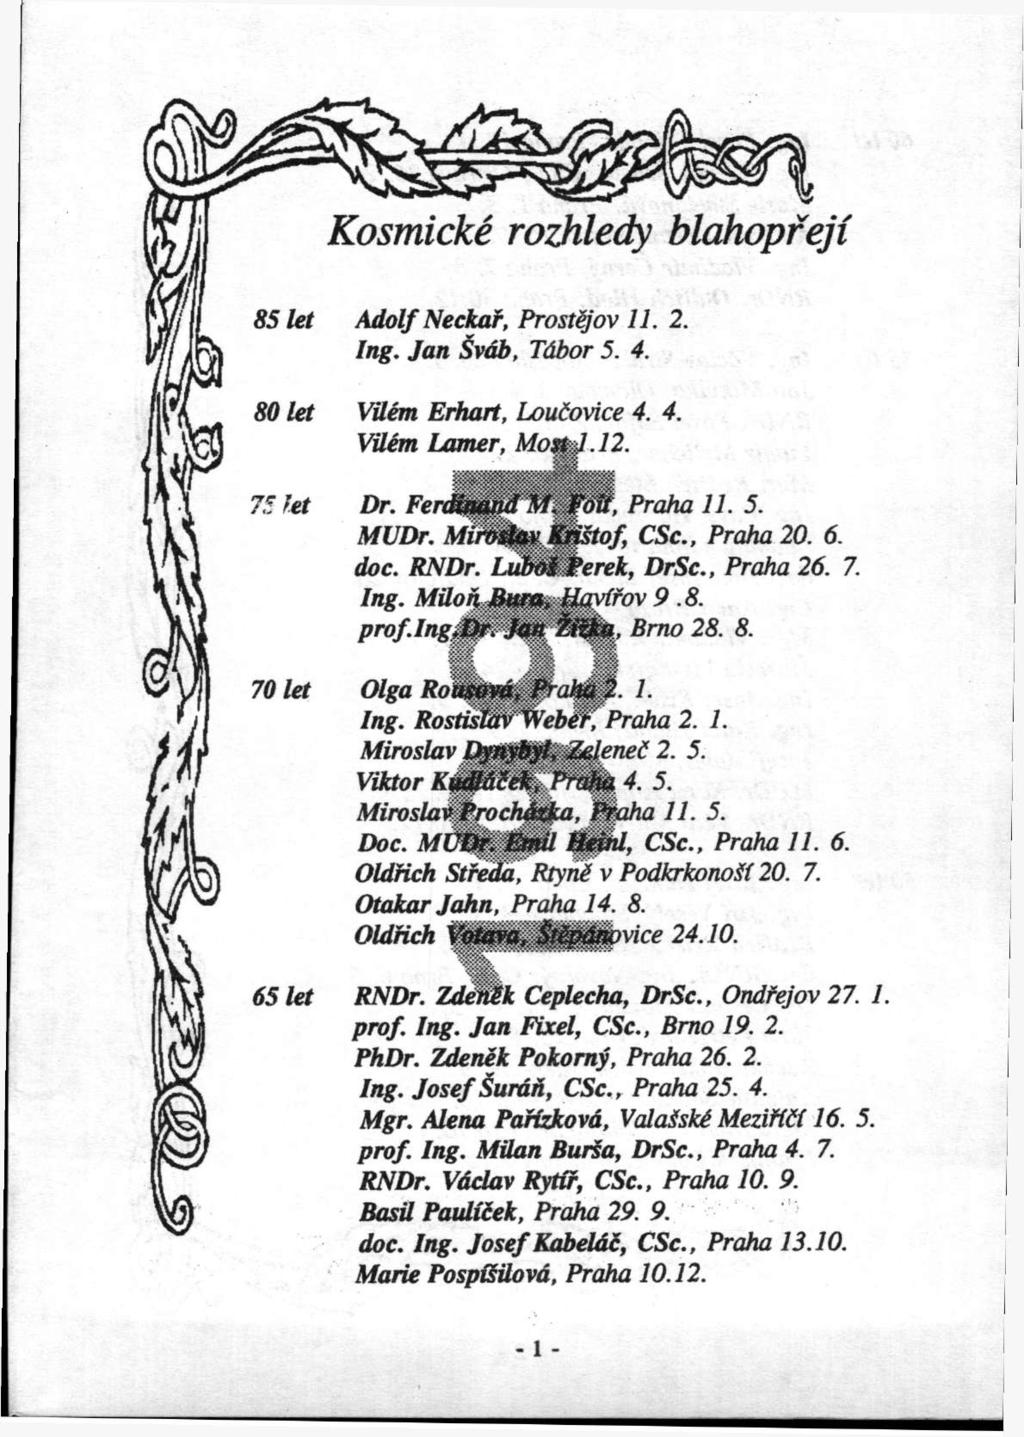 Kosmicke rozhledy blahopfeji 85 let Adolf Neckaf, Prost^ov 11. 2. Ing. Jan vdb, Tdbor 5. 4. ^ 80 let VUem Erhart, Loudovice 4. 4. ^'-7 a VUem Lamer, MoxkJ.12. /i, ^ J,/! 75 let Dr.